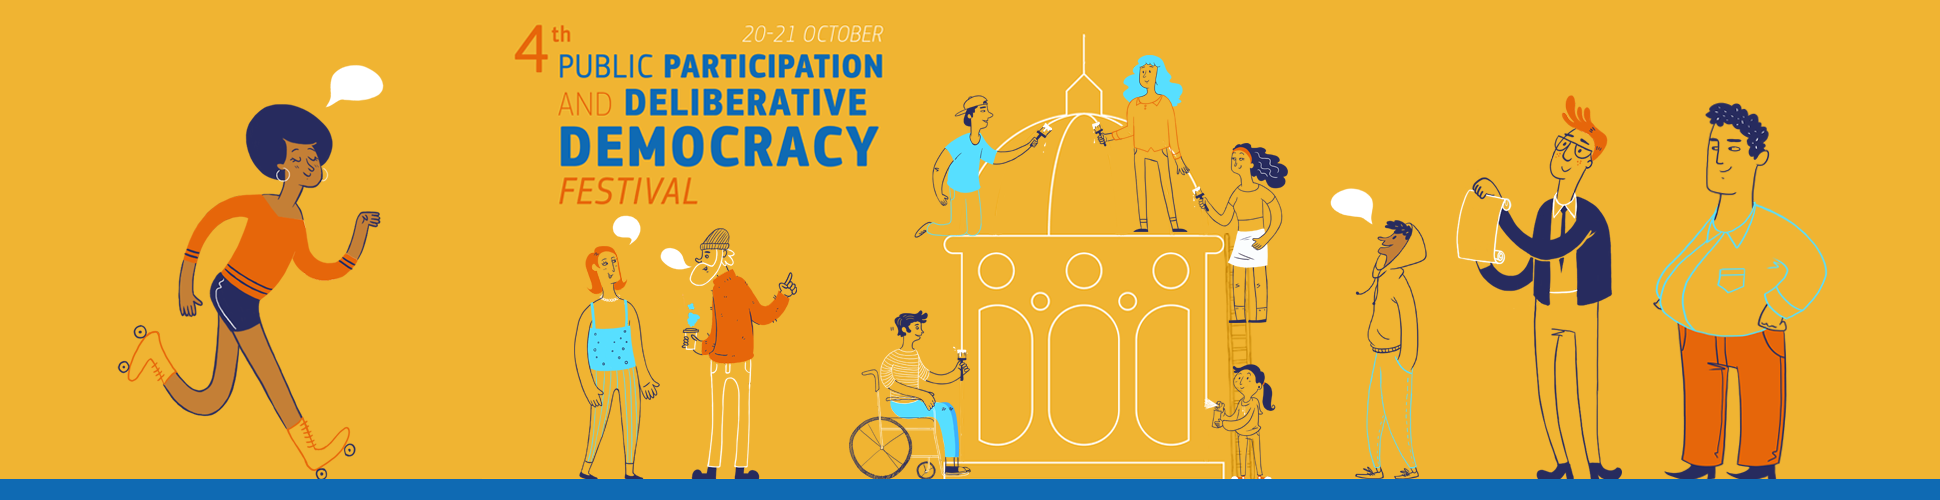 4th Public Participation and Deliberative Democracy Festival